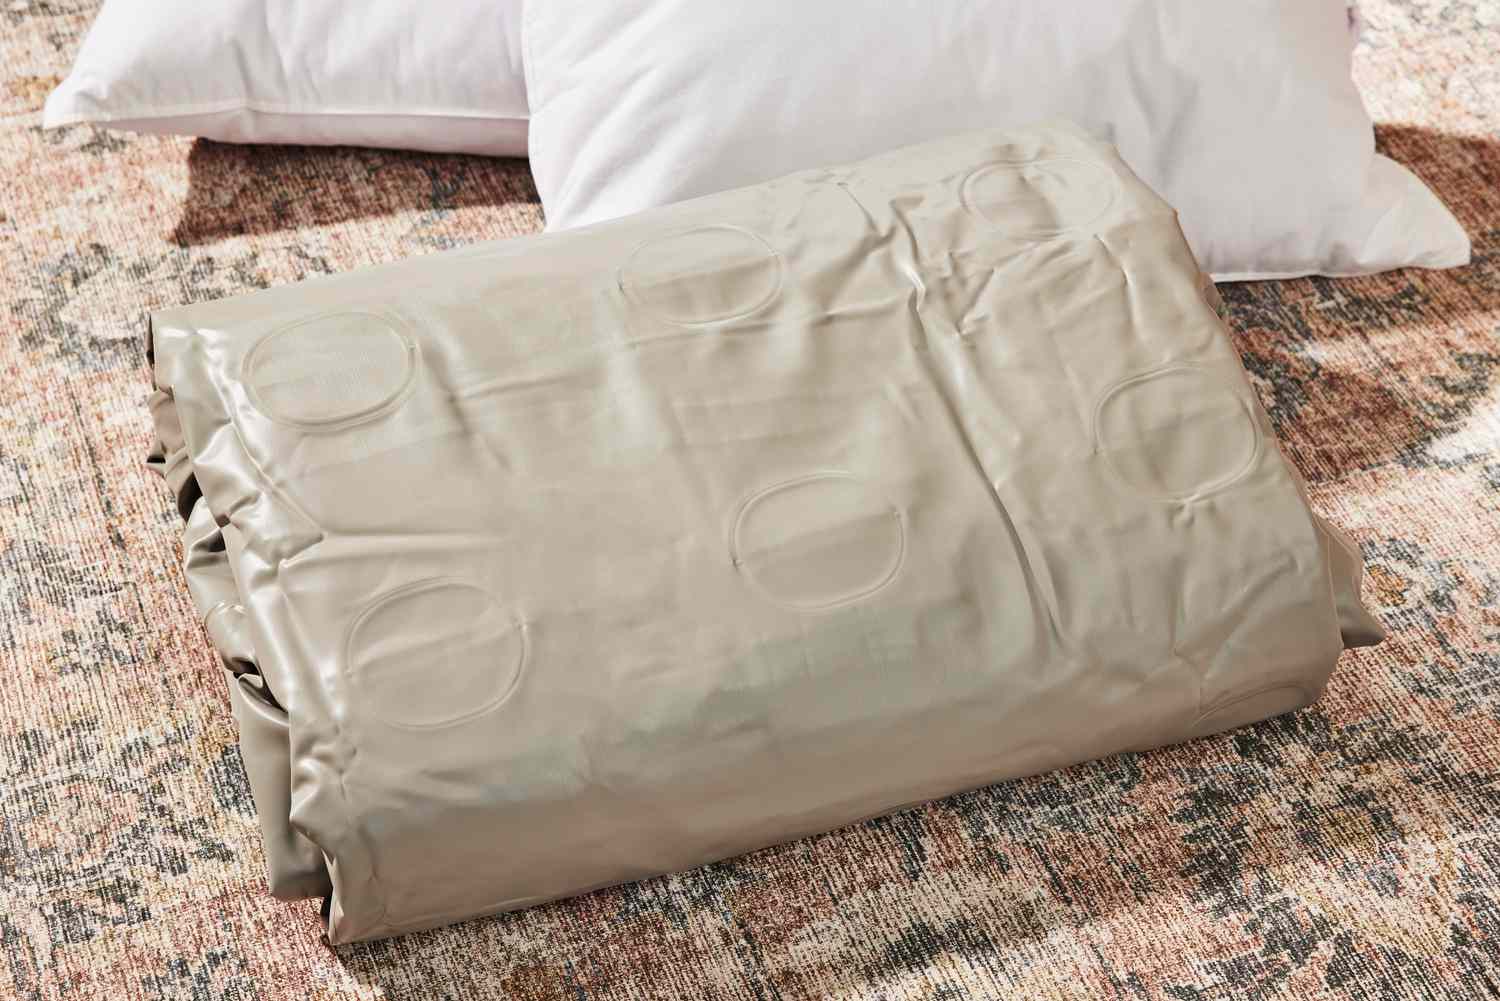 The Insta-Bed Raised 18-in Queen Pillow Top Air Mattress & Internal Never Flat Pump folded 